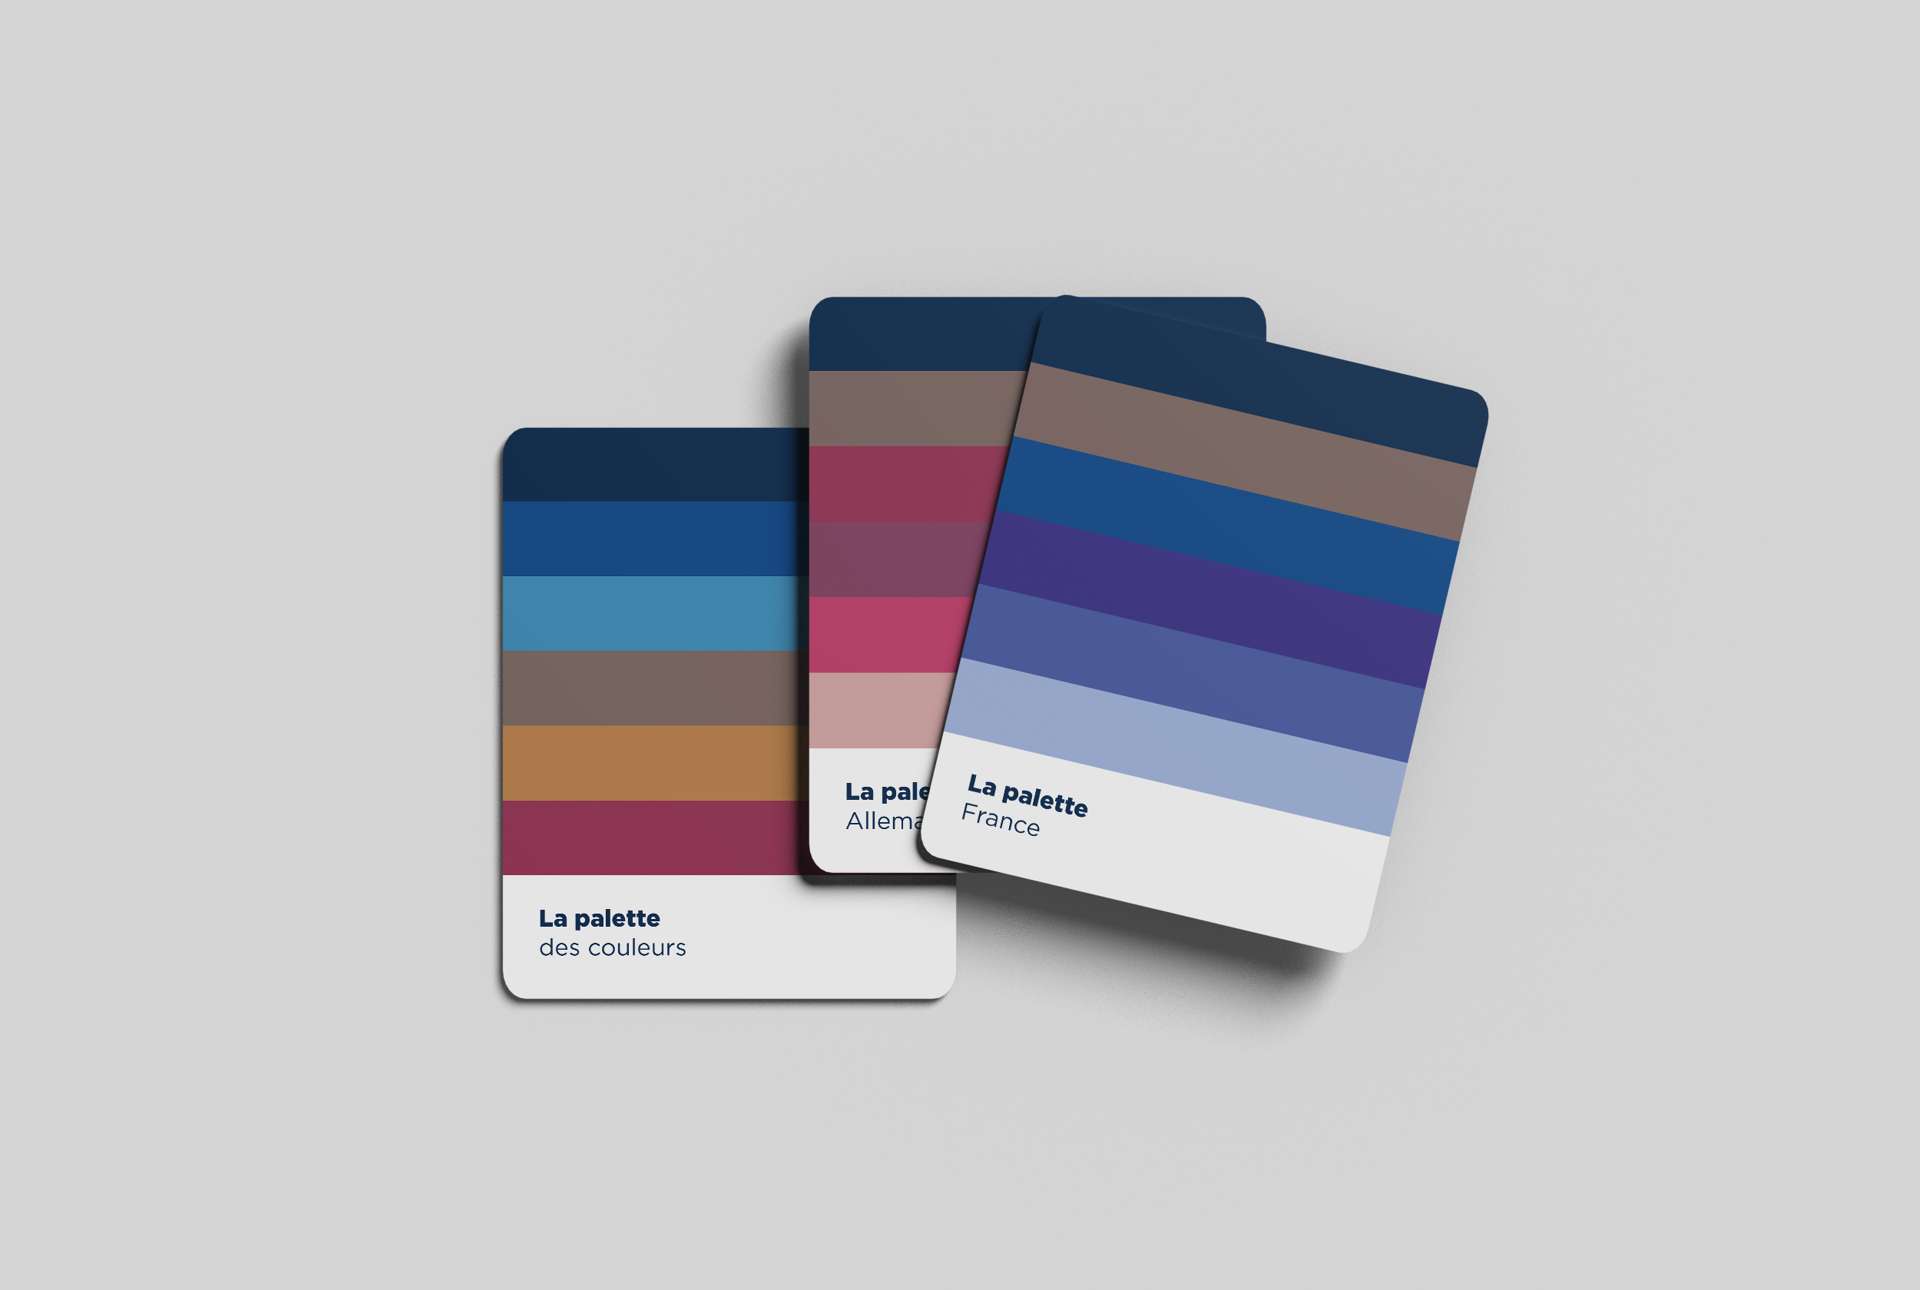 Palettes de couleurs utilisées pour identifier visuellement les différents Business Club de la Chambre de Commerce Luxembourg (éléments de la charte graphique / identité visuelle)